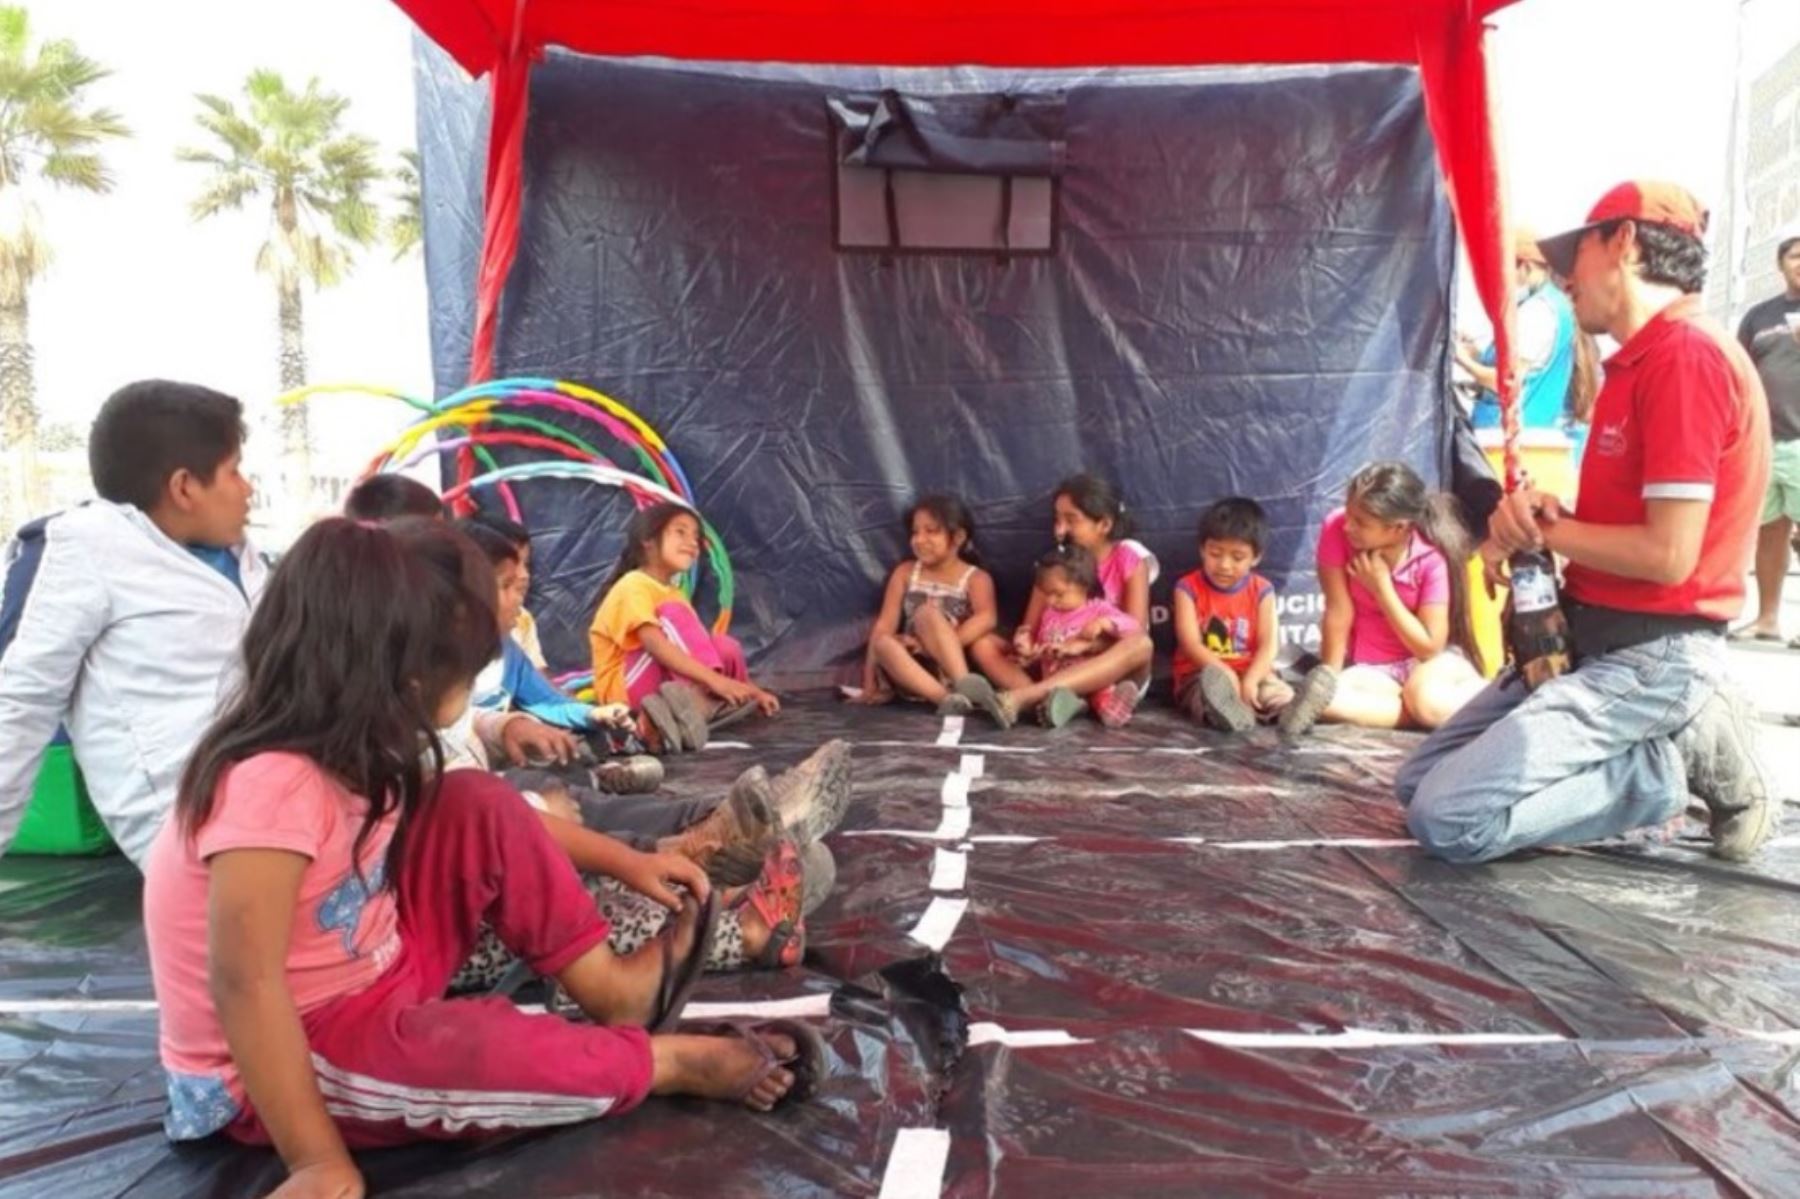 Minedu realiza talleres lúdicos para niños evacuados por incendio en Comas. Foto: ANDINA/Difusión.